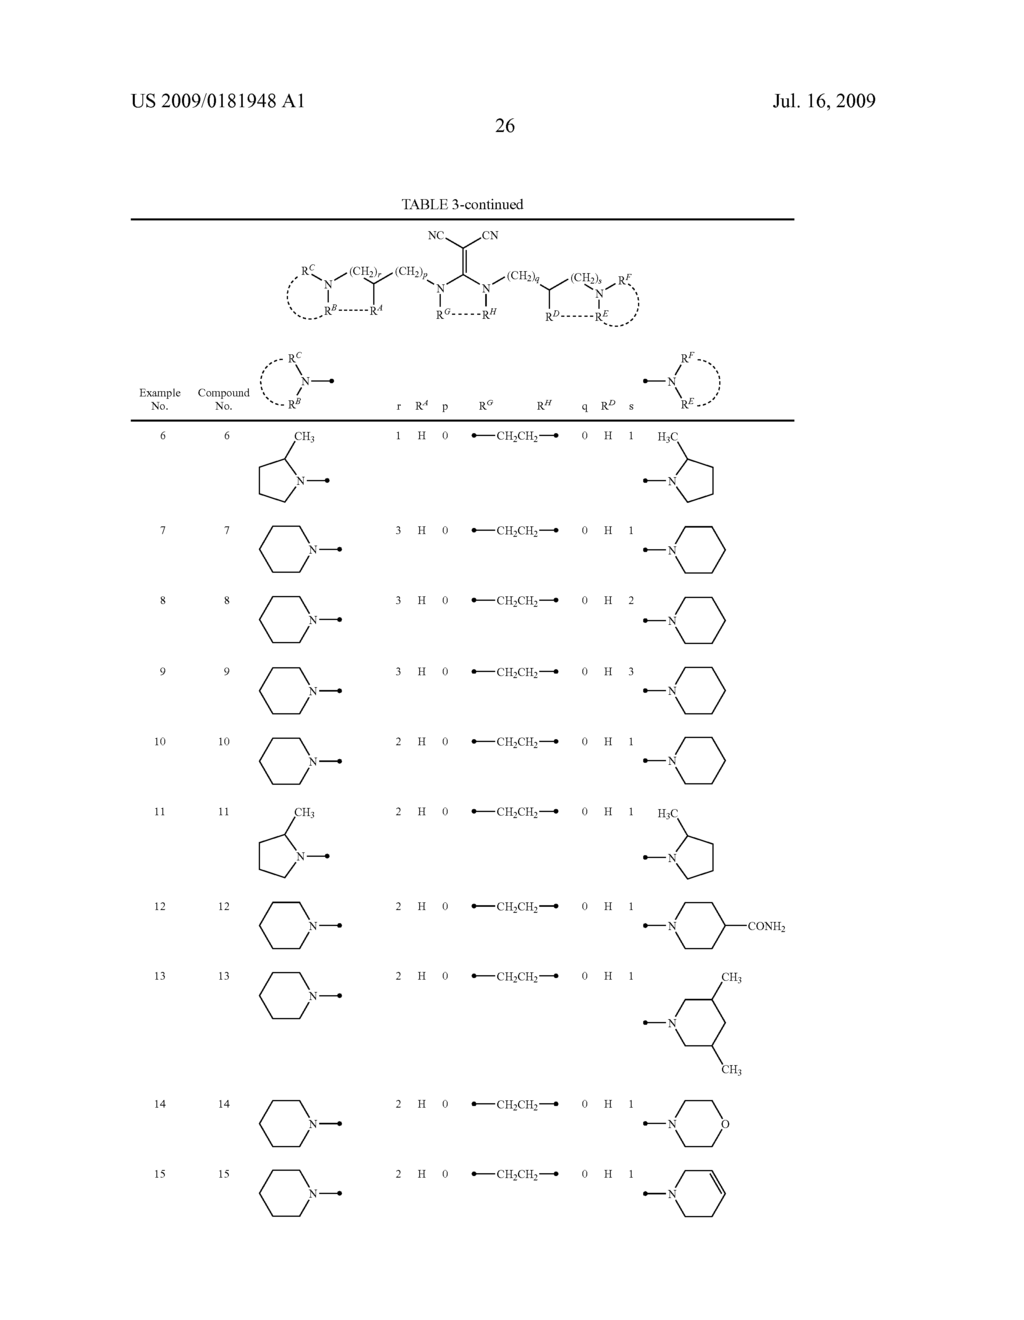 DIAMINE DERIVATIVE - diagram, schematic, and image 27